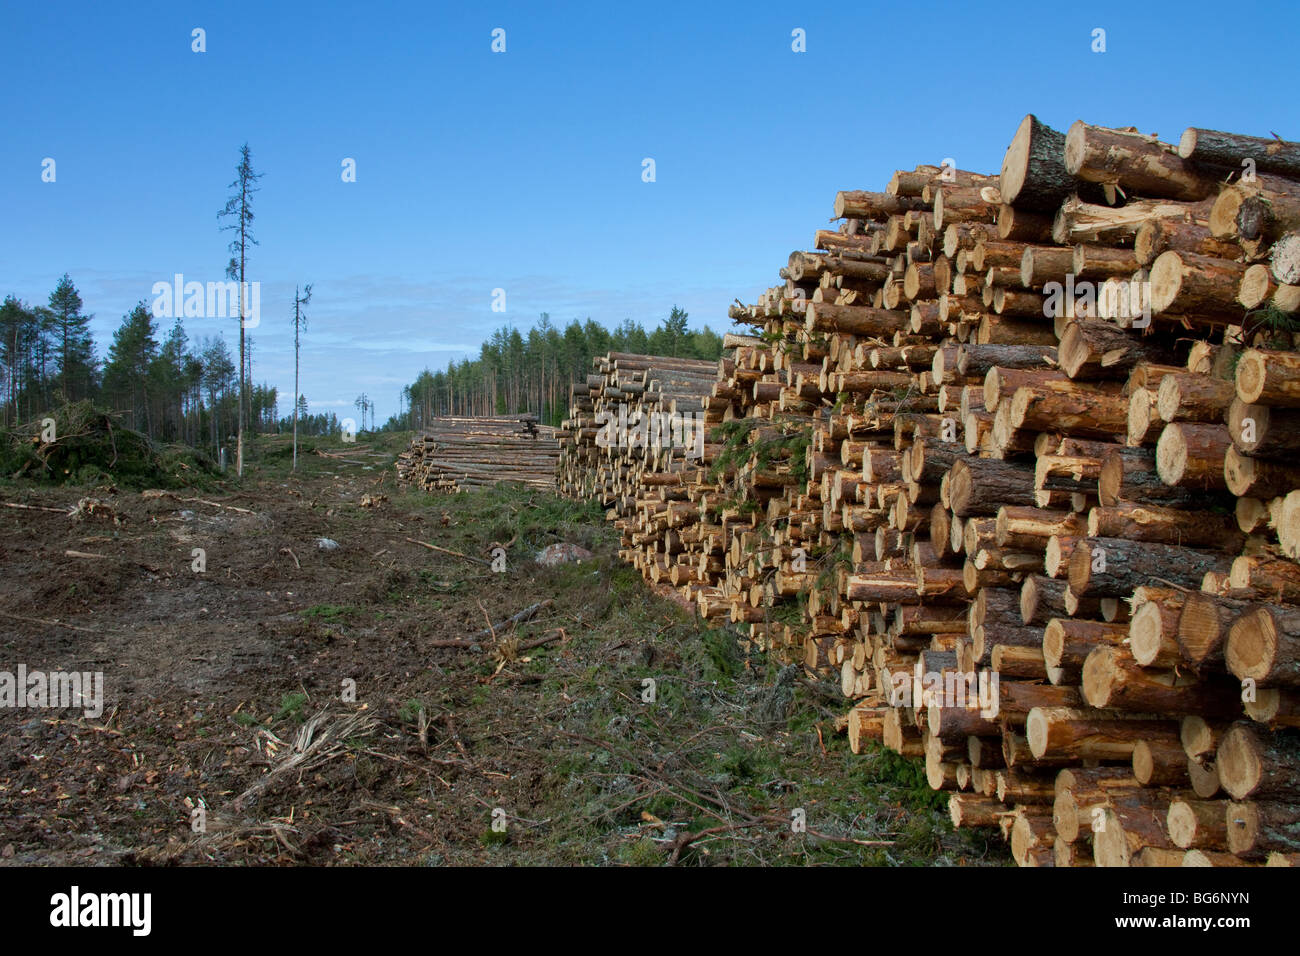 Industria maderera mostrando montón de cortar troncos / árboles / madera procedente de bosques de pino, Suecia Foto de stock